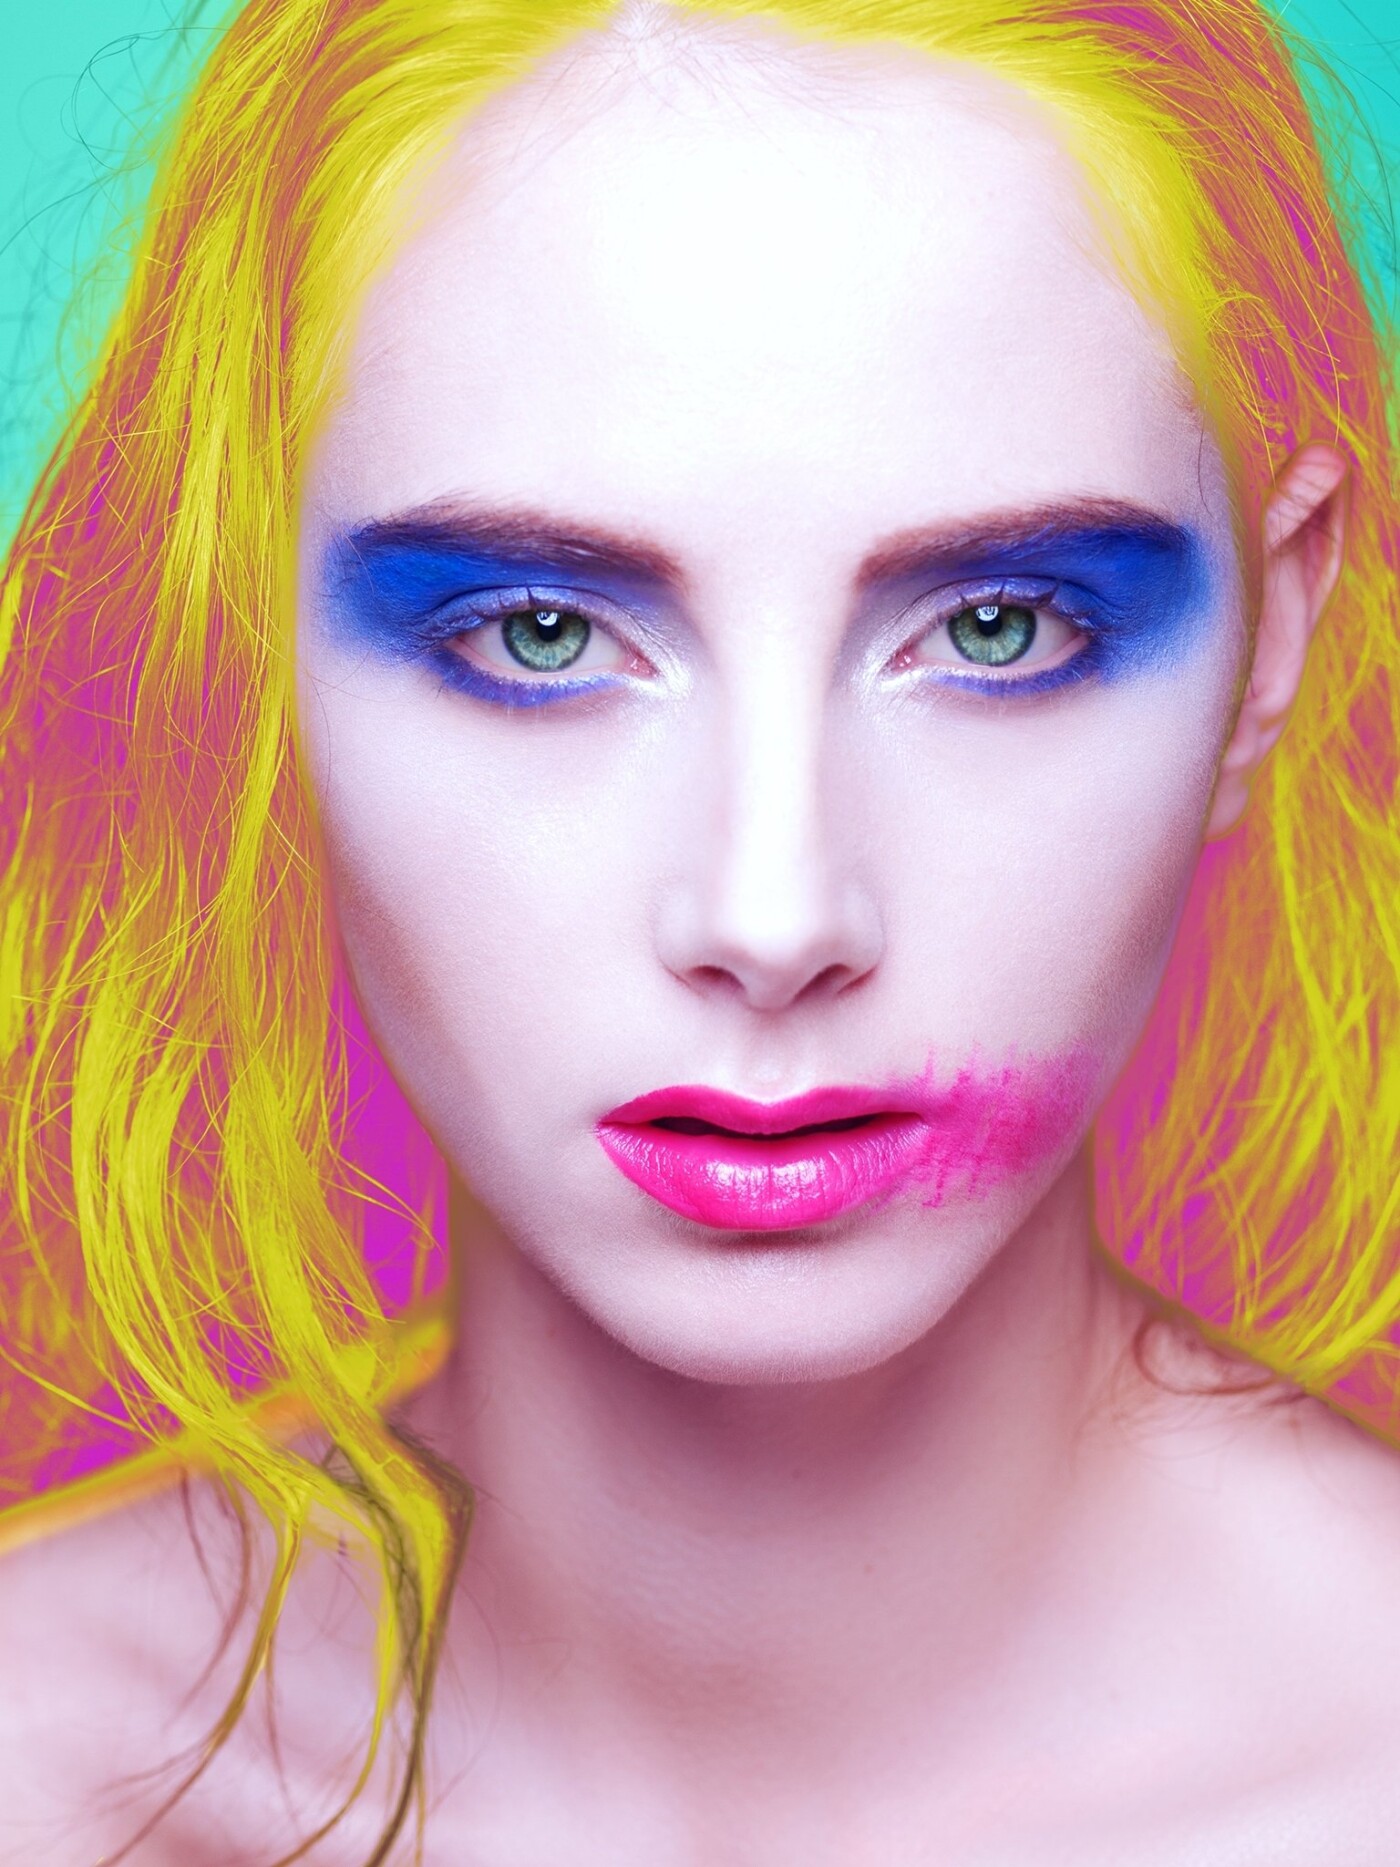 A conceptual popart portrait with creative makeup.